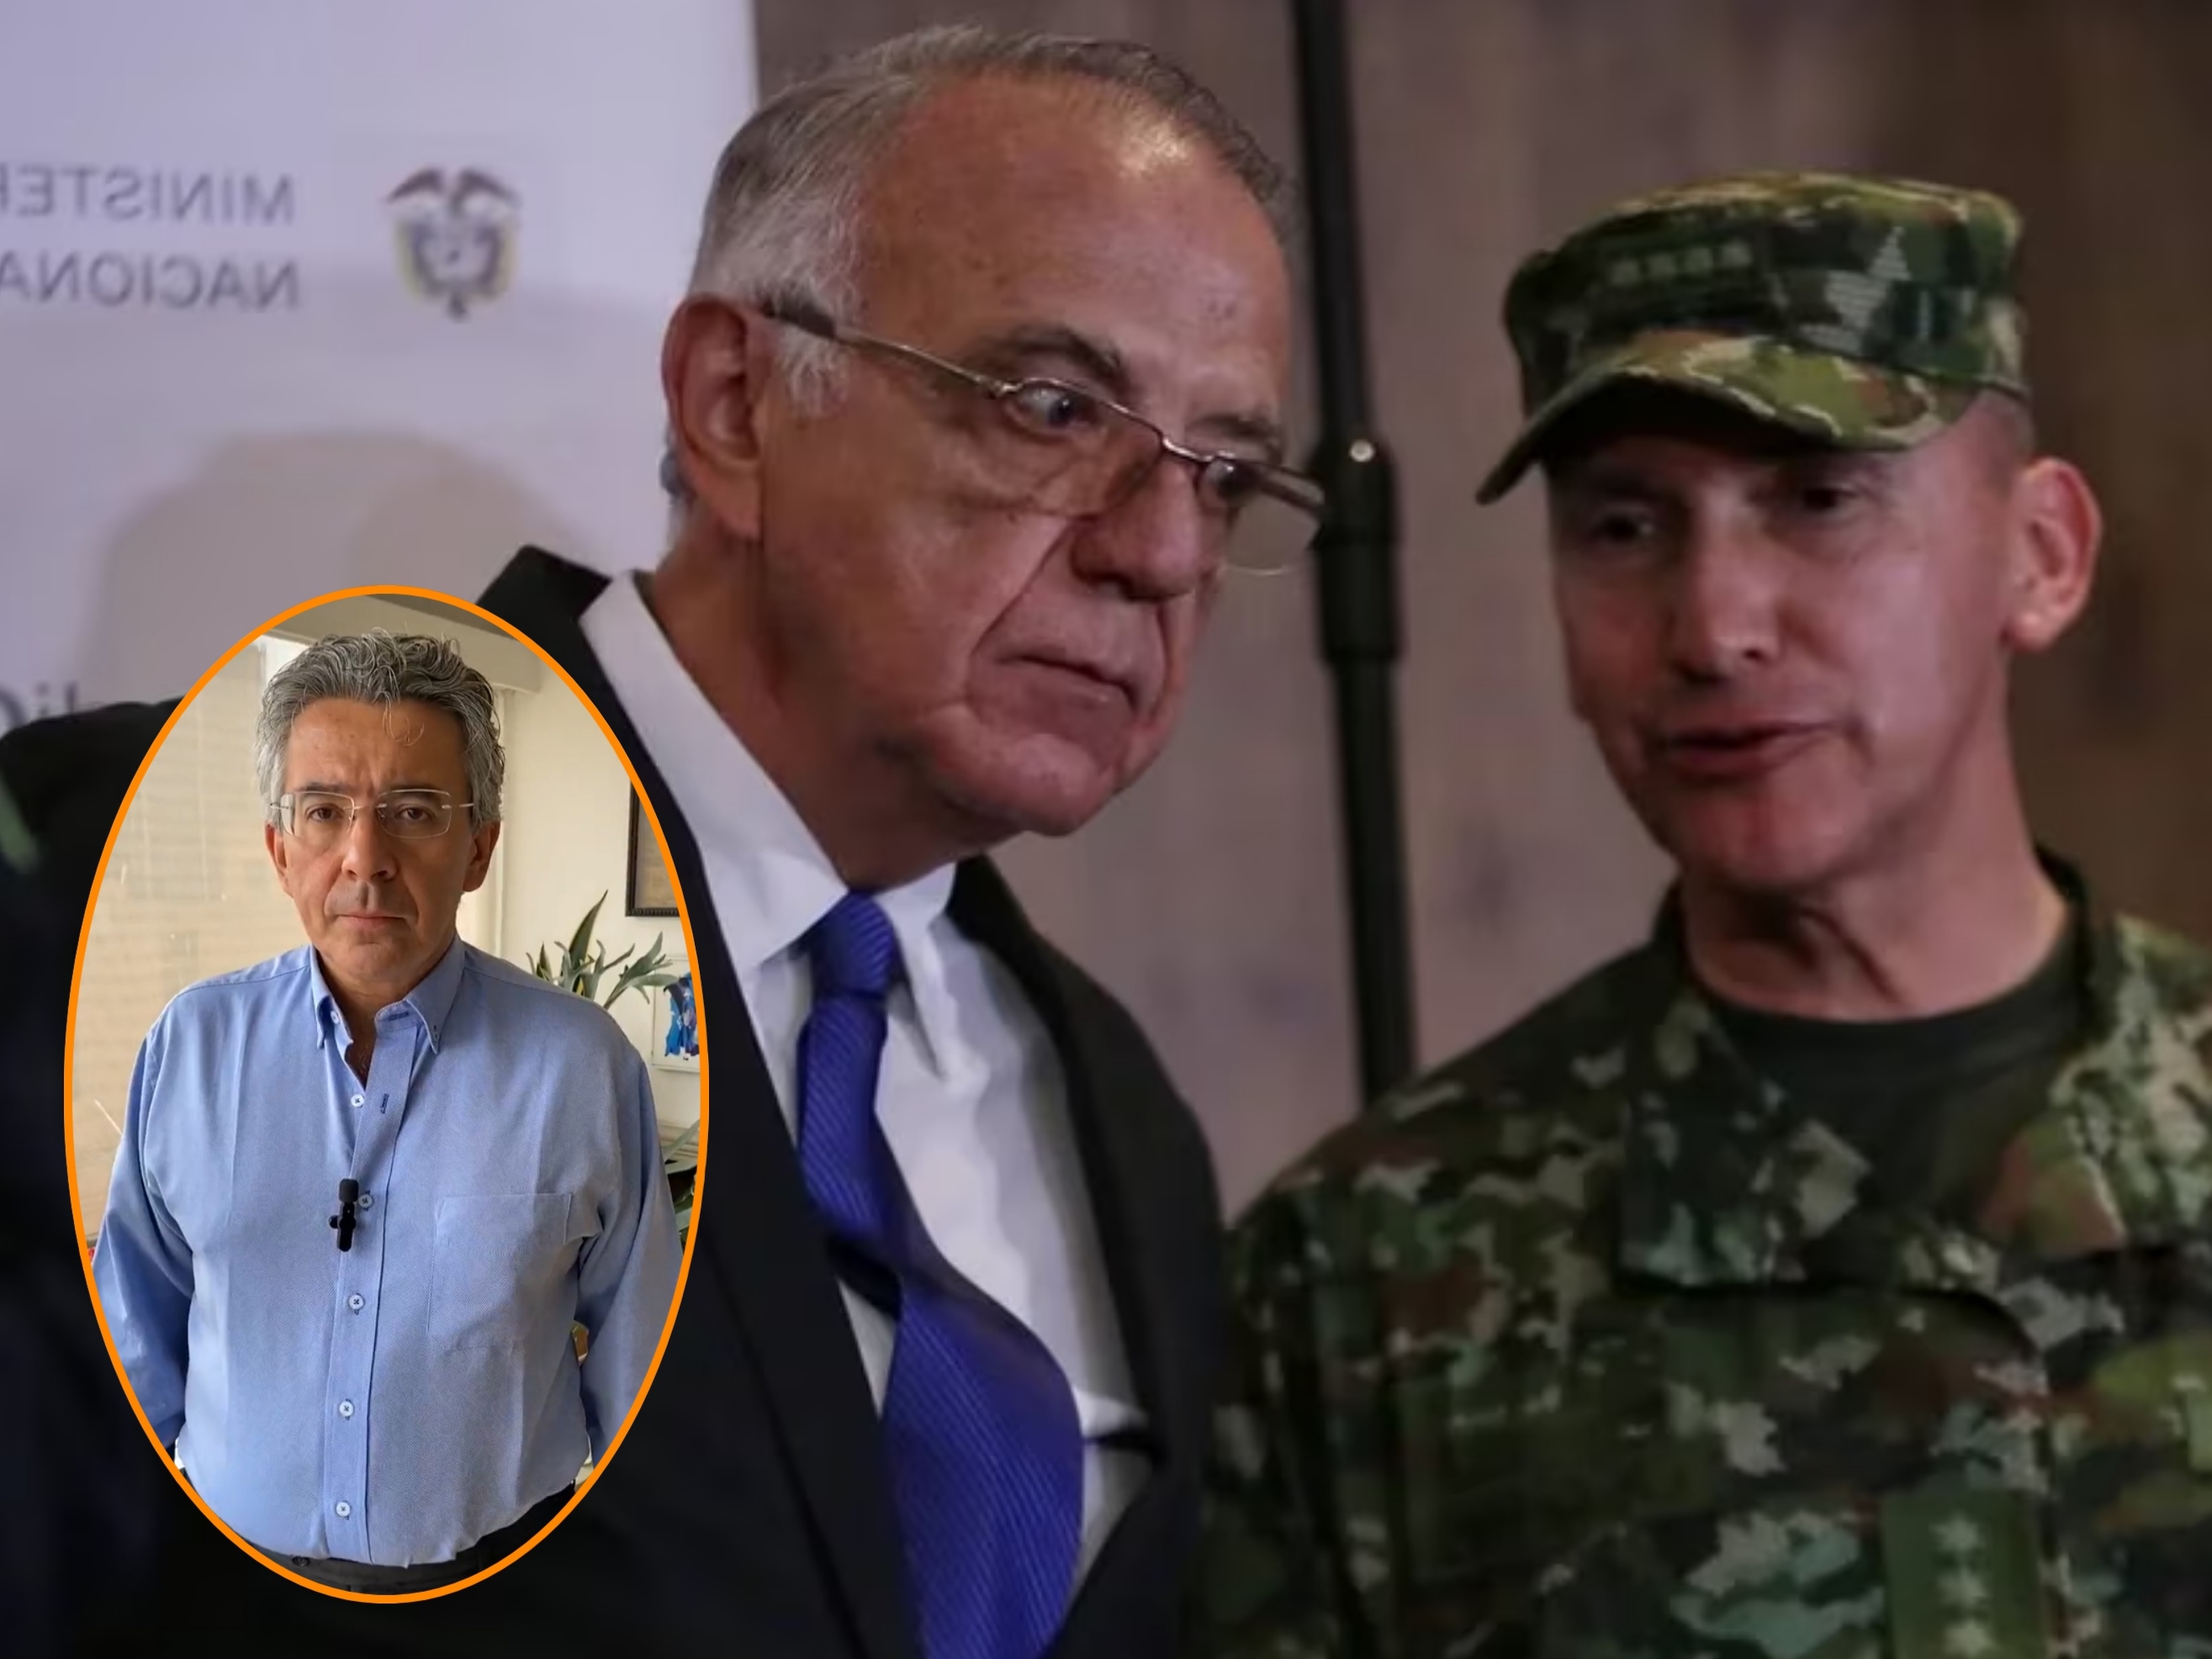 “El ministro de defensa odia nuestras fuerzas públicas”: la contundente afirmación de Enrique Gómez 